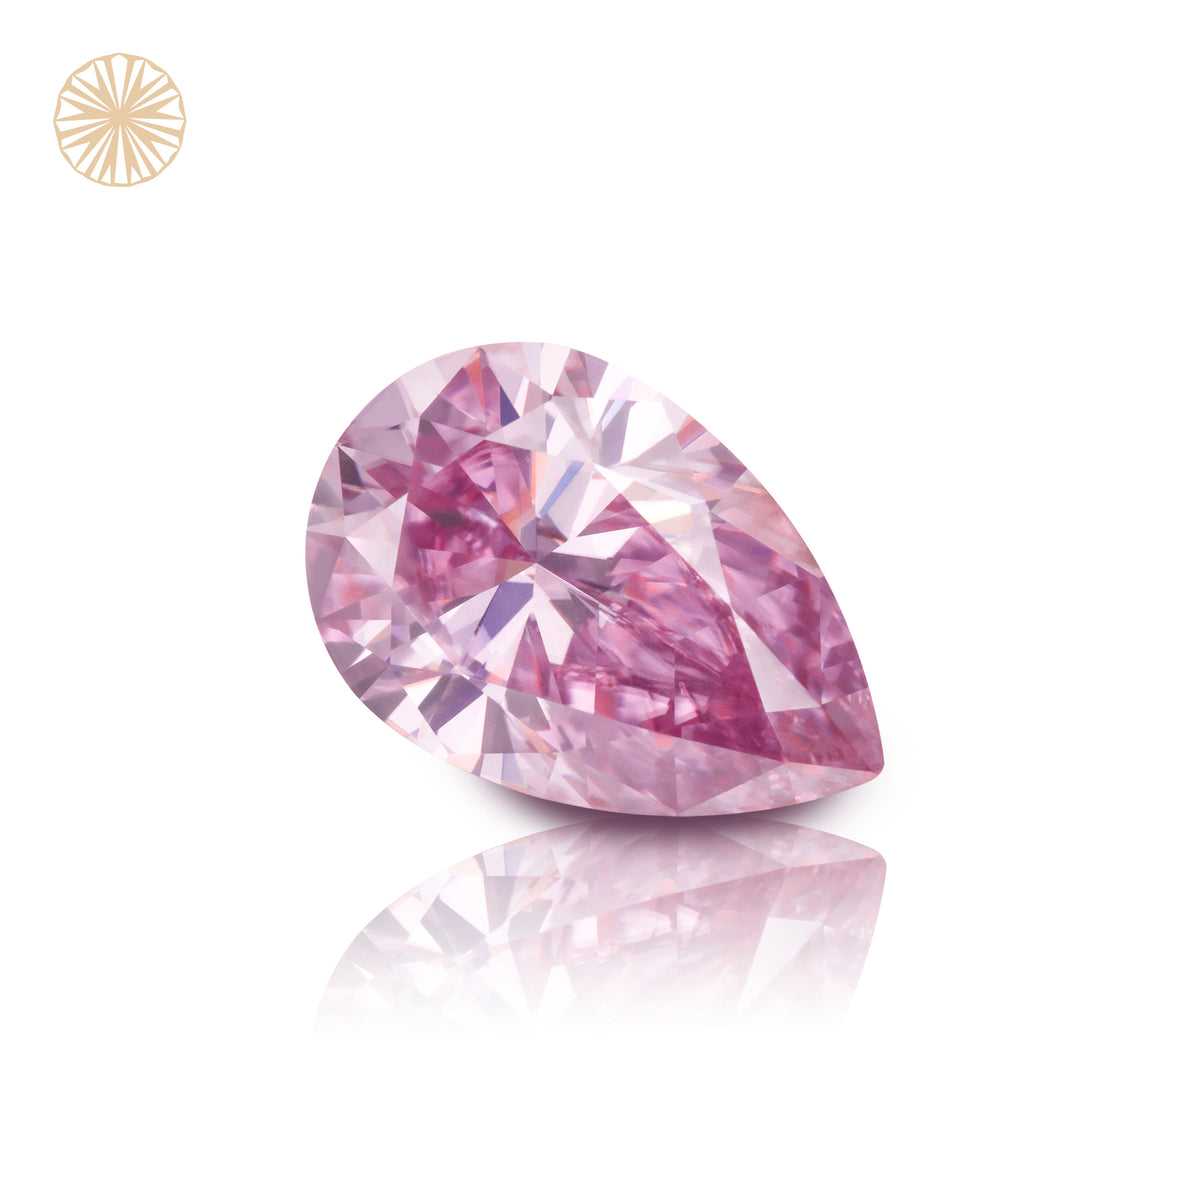 Sakura Pink Pear Cut Teardrop Shape Moissanite Diamond Loose Gemstones GRA Certified Light Pink VVS1 Moissanite Fancy Cut for Jewelry Making